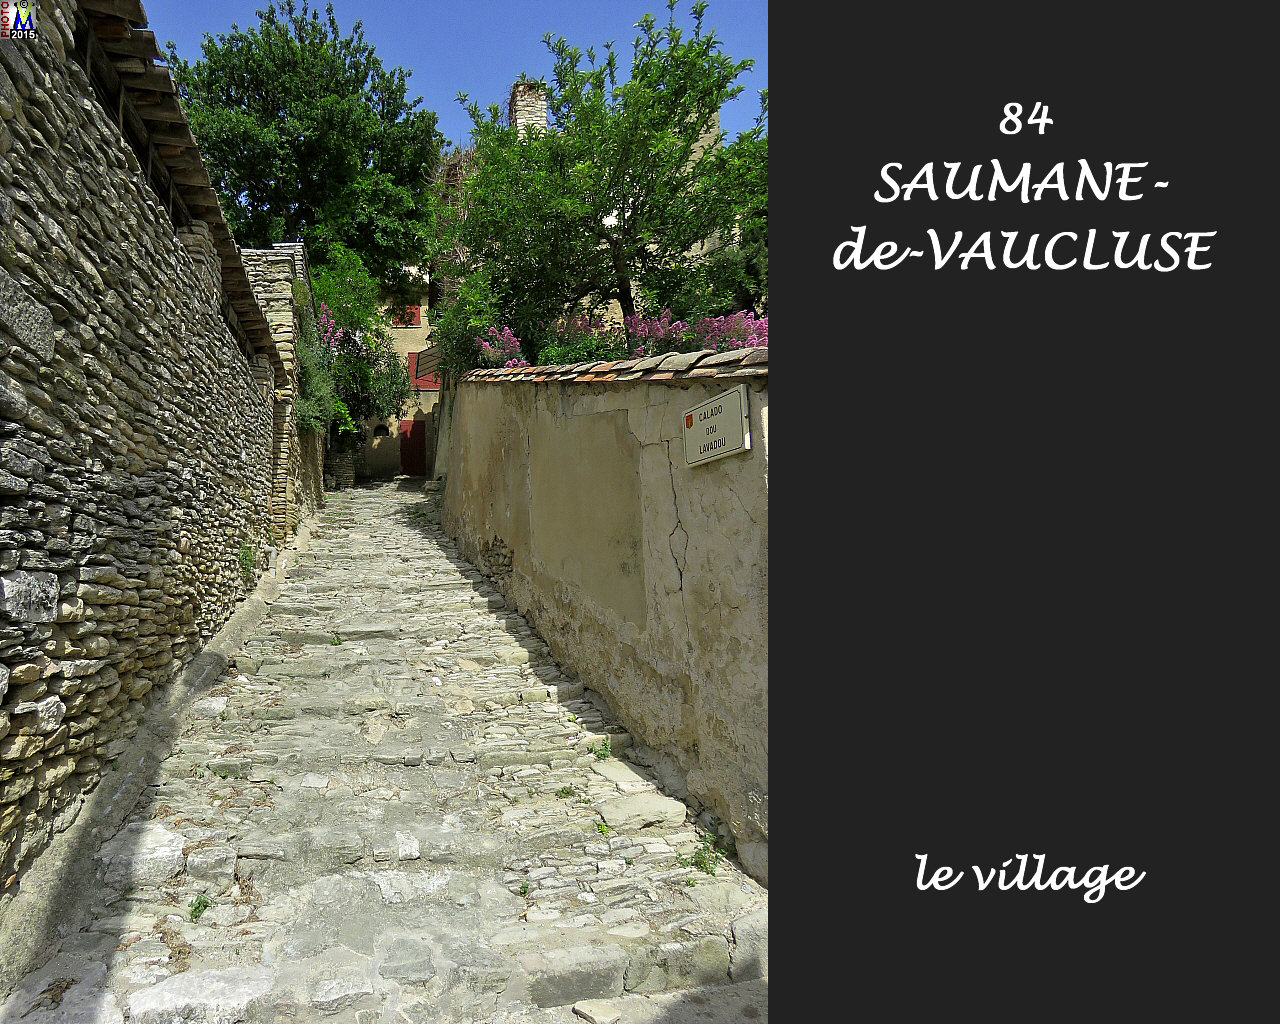 84SAUMANE-VAUCLUSE_village_124.jpg